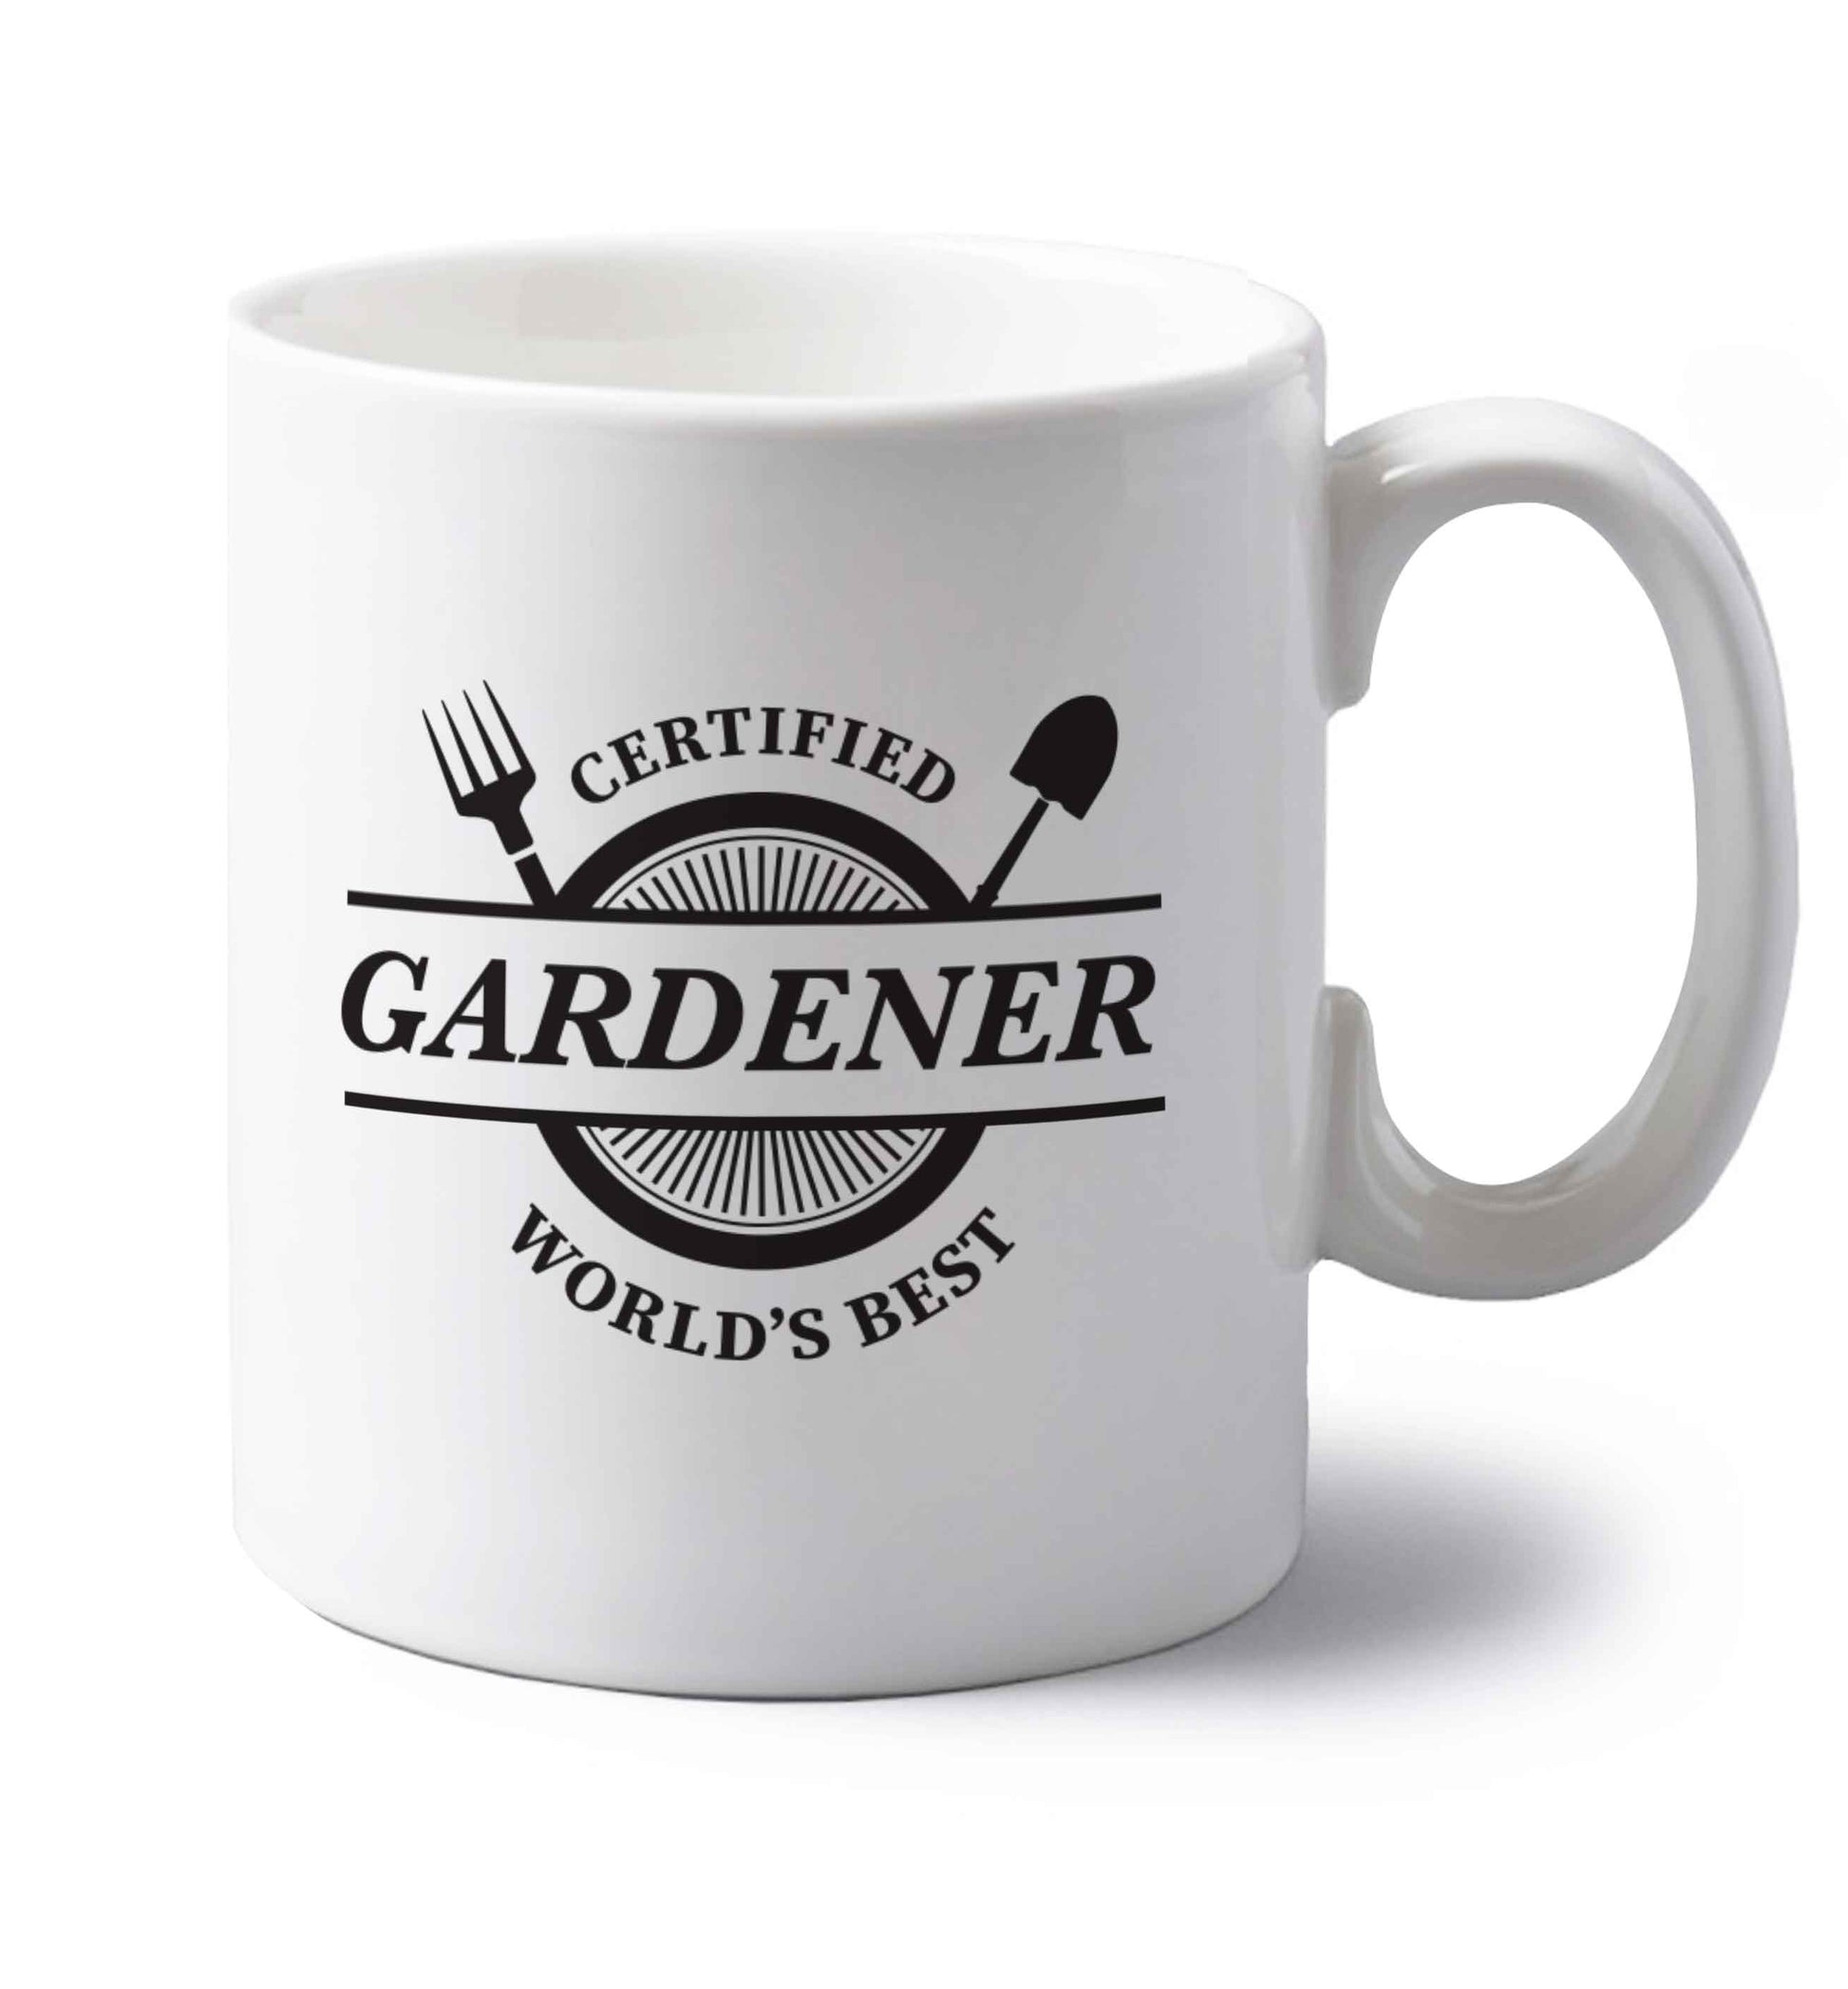 Certified gardener worlds best left handed white ceramic mug 